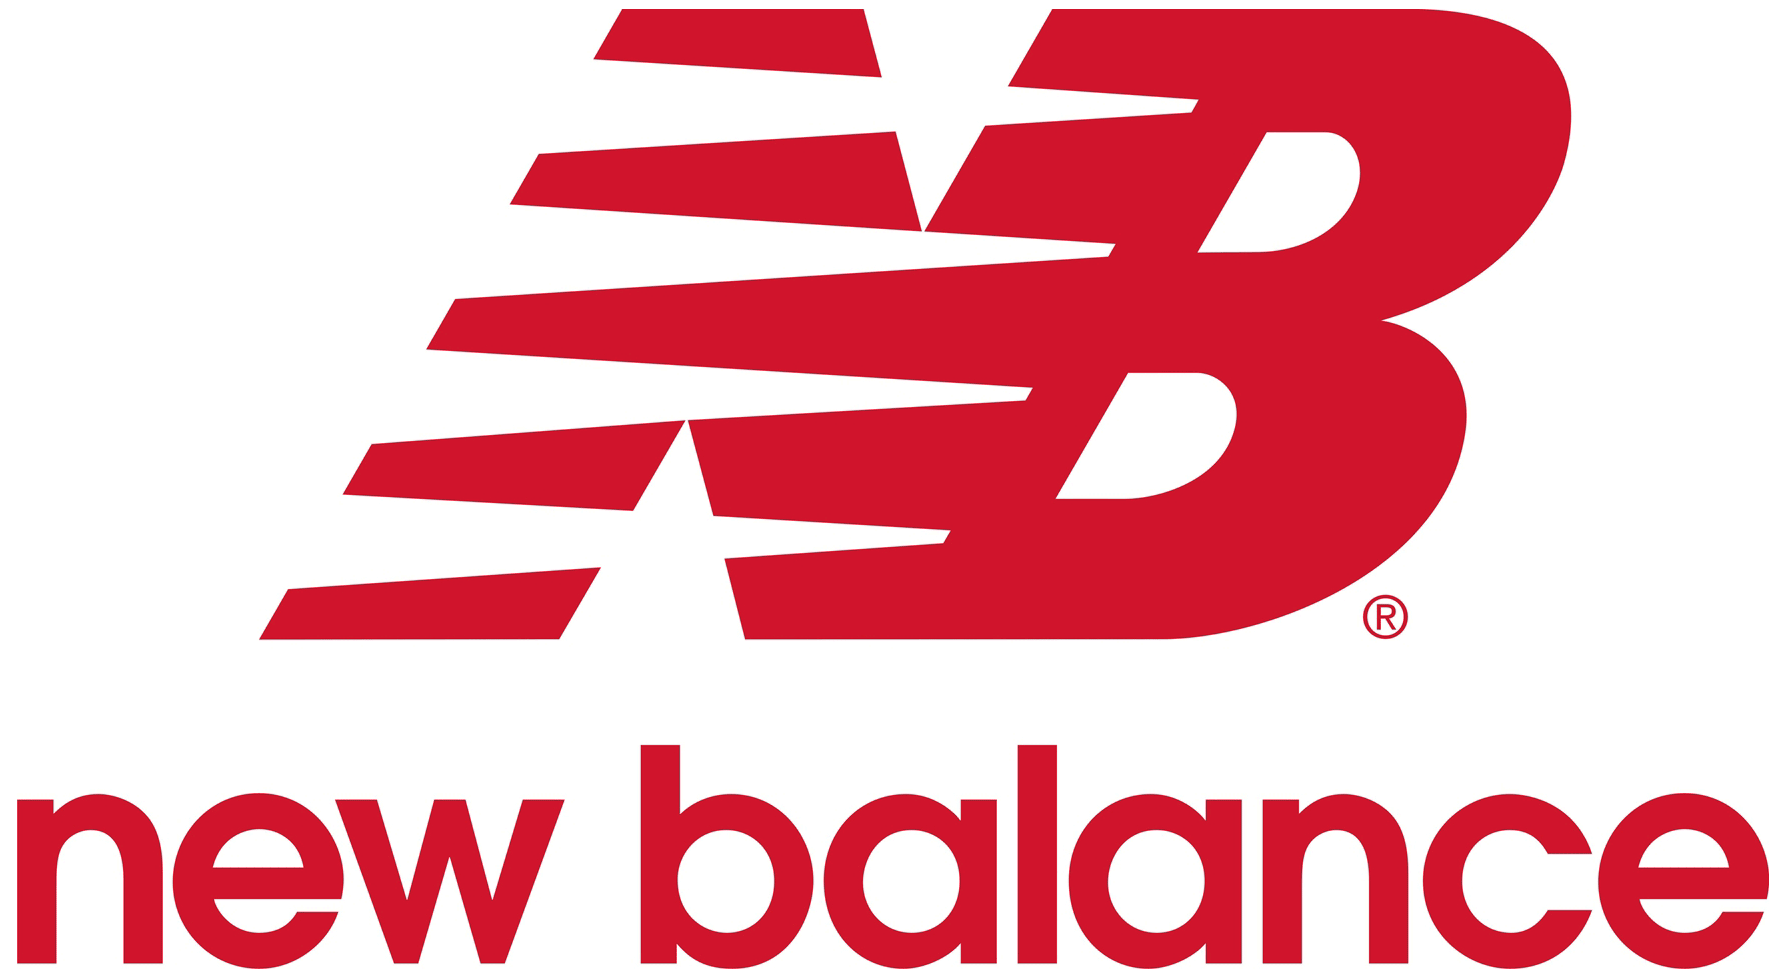 New Balance ニューバランス ロゴマーク Logomark Mania 世界のかわいいロゴマーク集 企業ロゴ ブランドロゴ